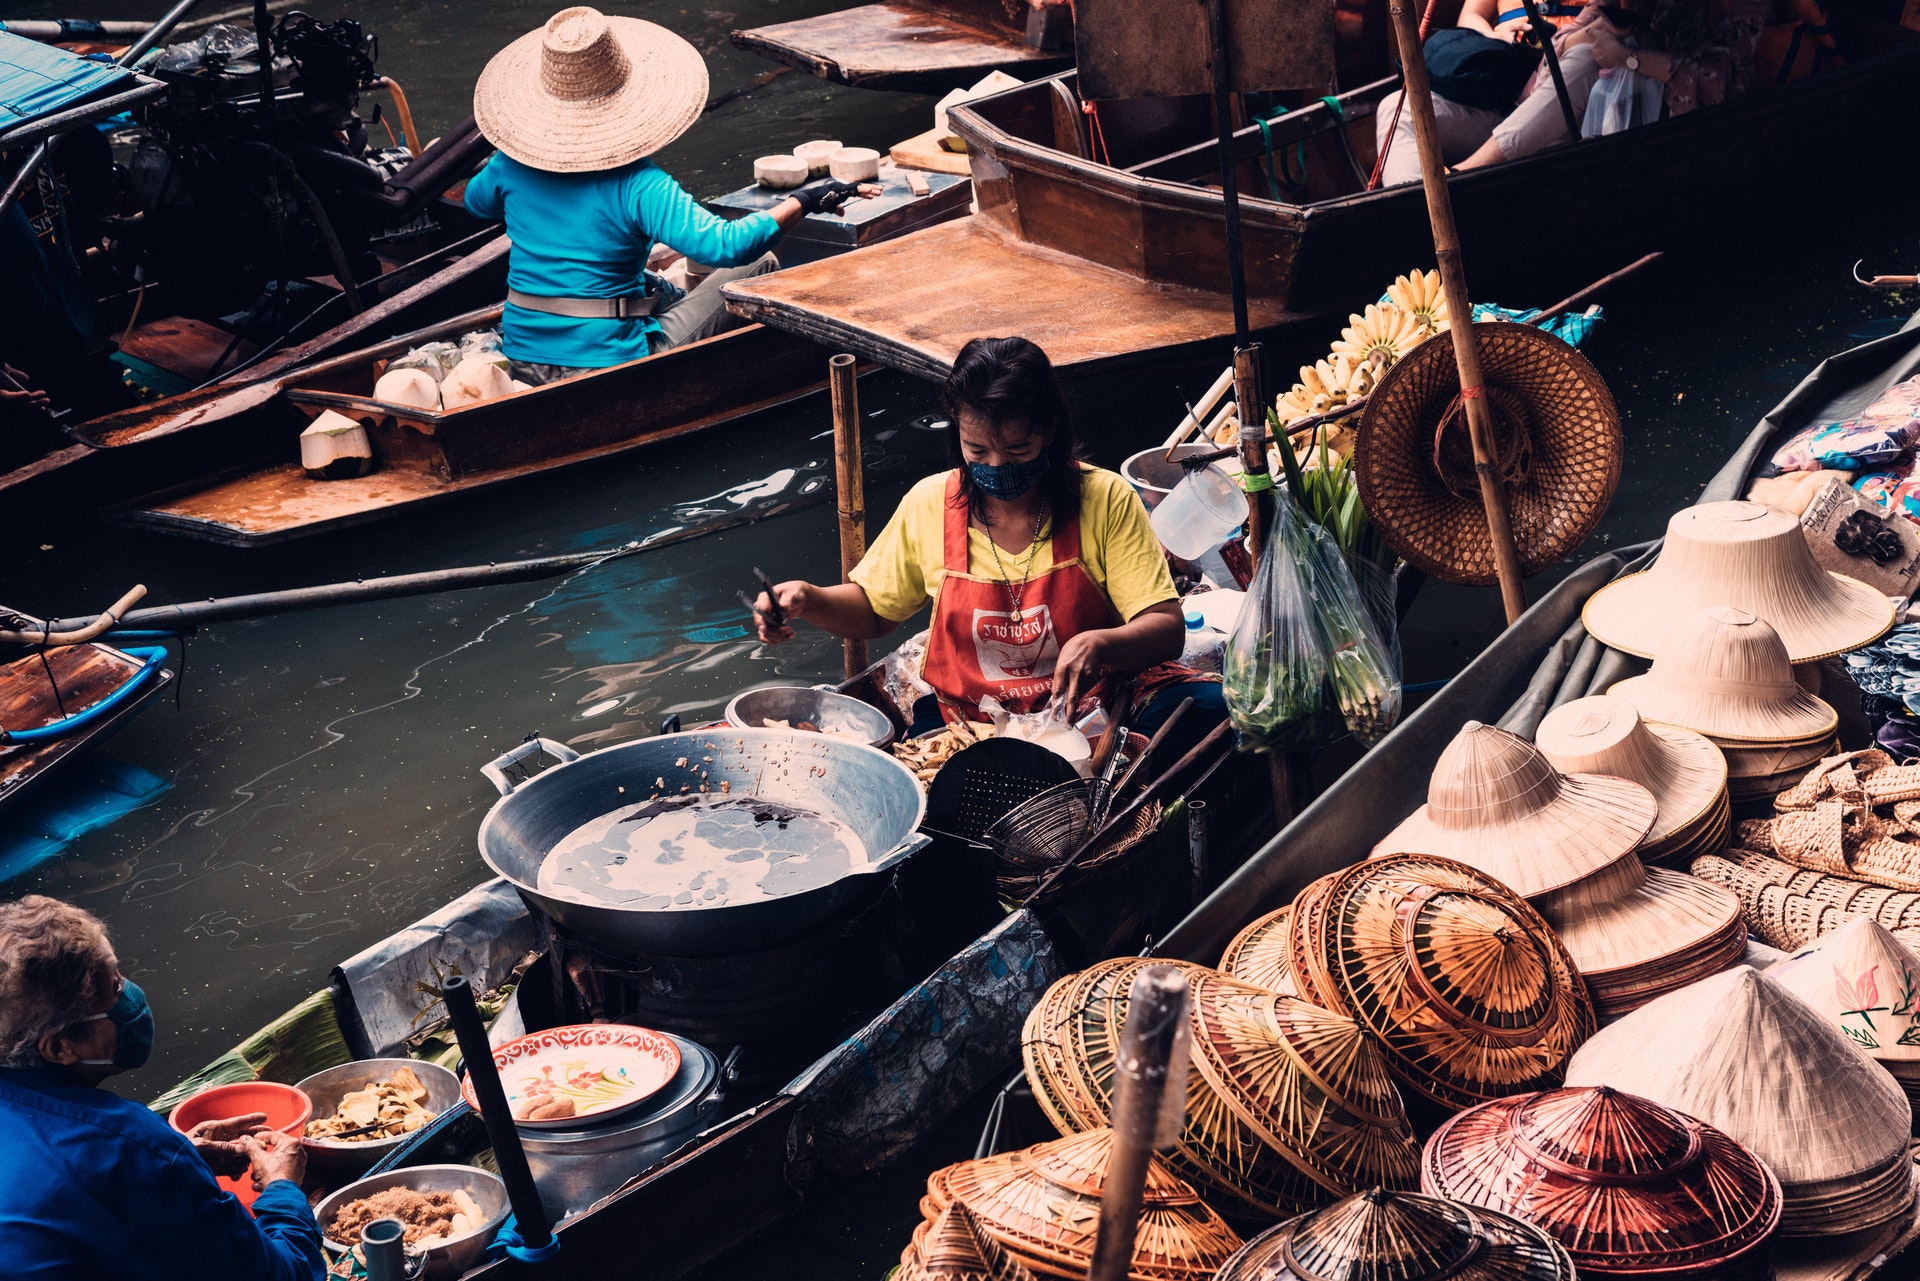 Floating Market Bangkok